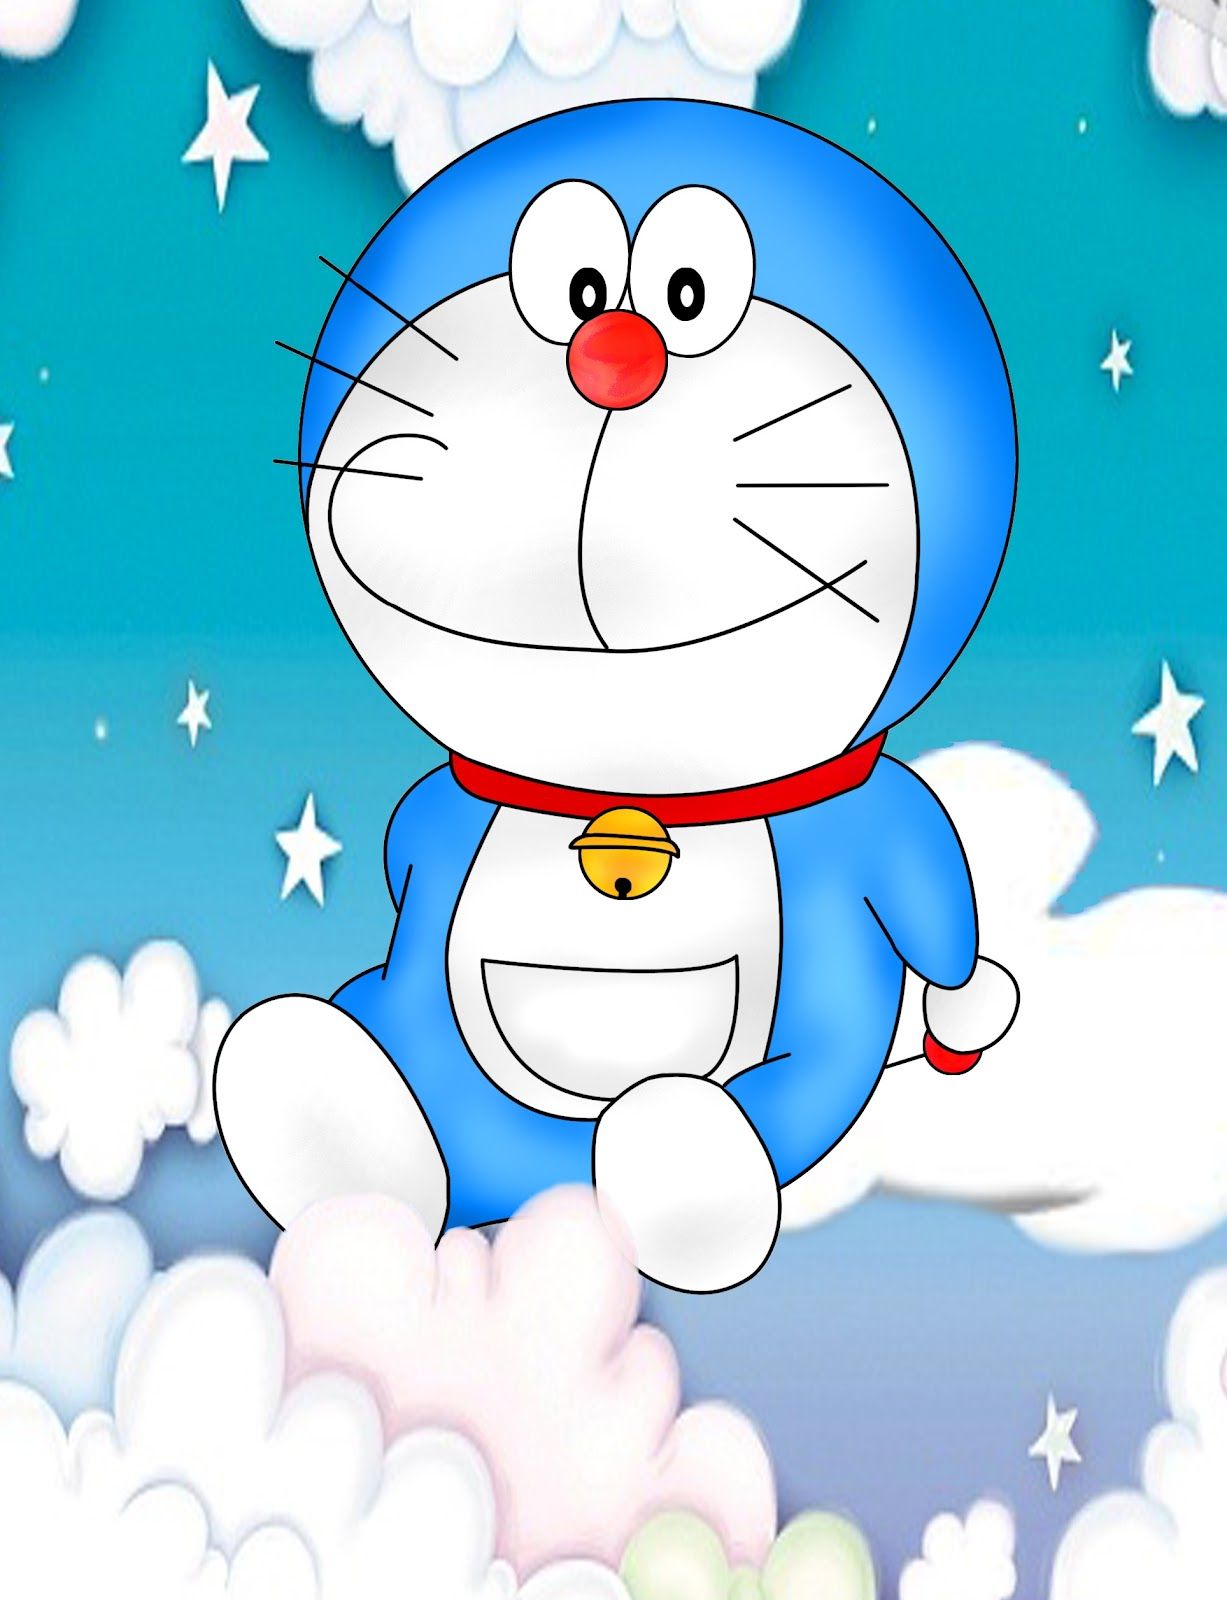 Hãy tận hưởng những bức hình nền Doraemon đáng yêu, mang đến cho bạn một không gian sống sáng tạo và độc đáo. Với những hình ảnh màu sắc và đầy tình cảm này, Doraemon sẽ là nguồn động lực mạnh mẽ giúp bạn vượt qua mọi khó khăn trong cuộc sống.